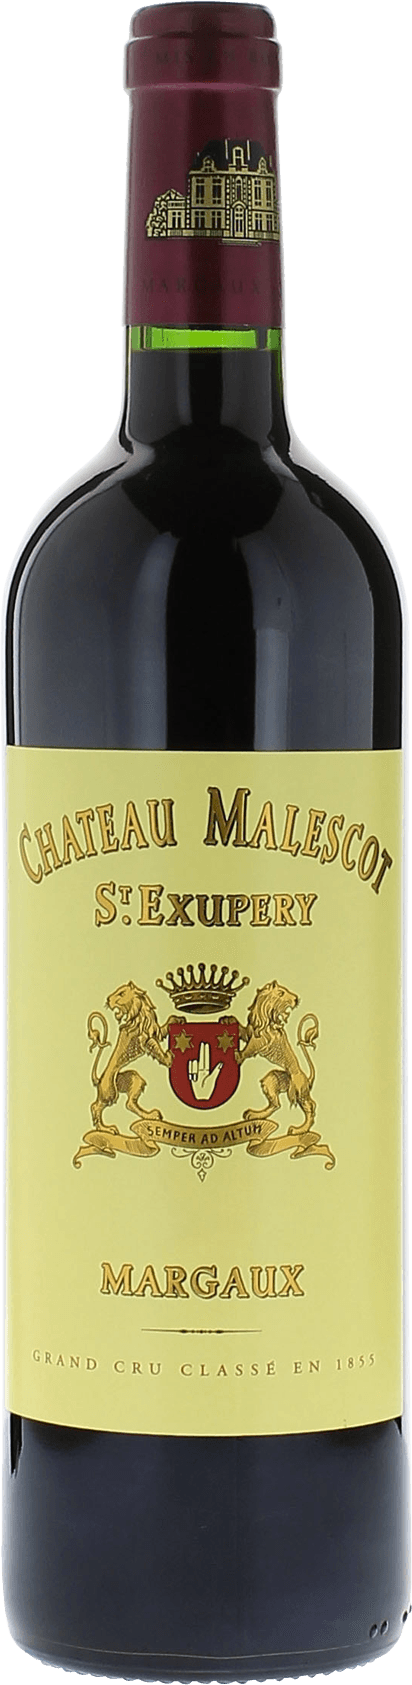 Malescot saint exupery 1999 3me Grand cru class Margaux, Bordeaux rouge